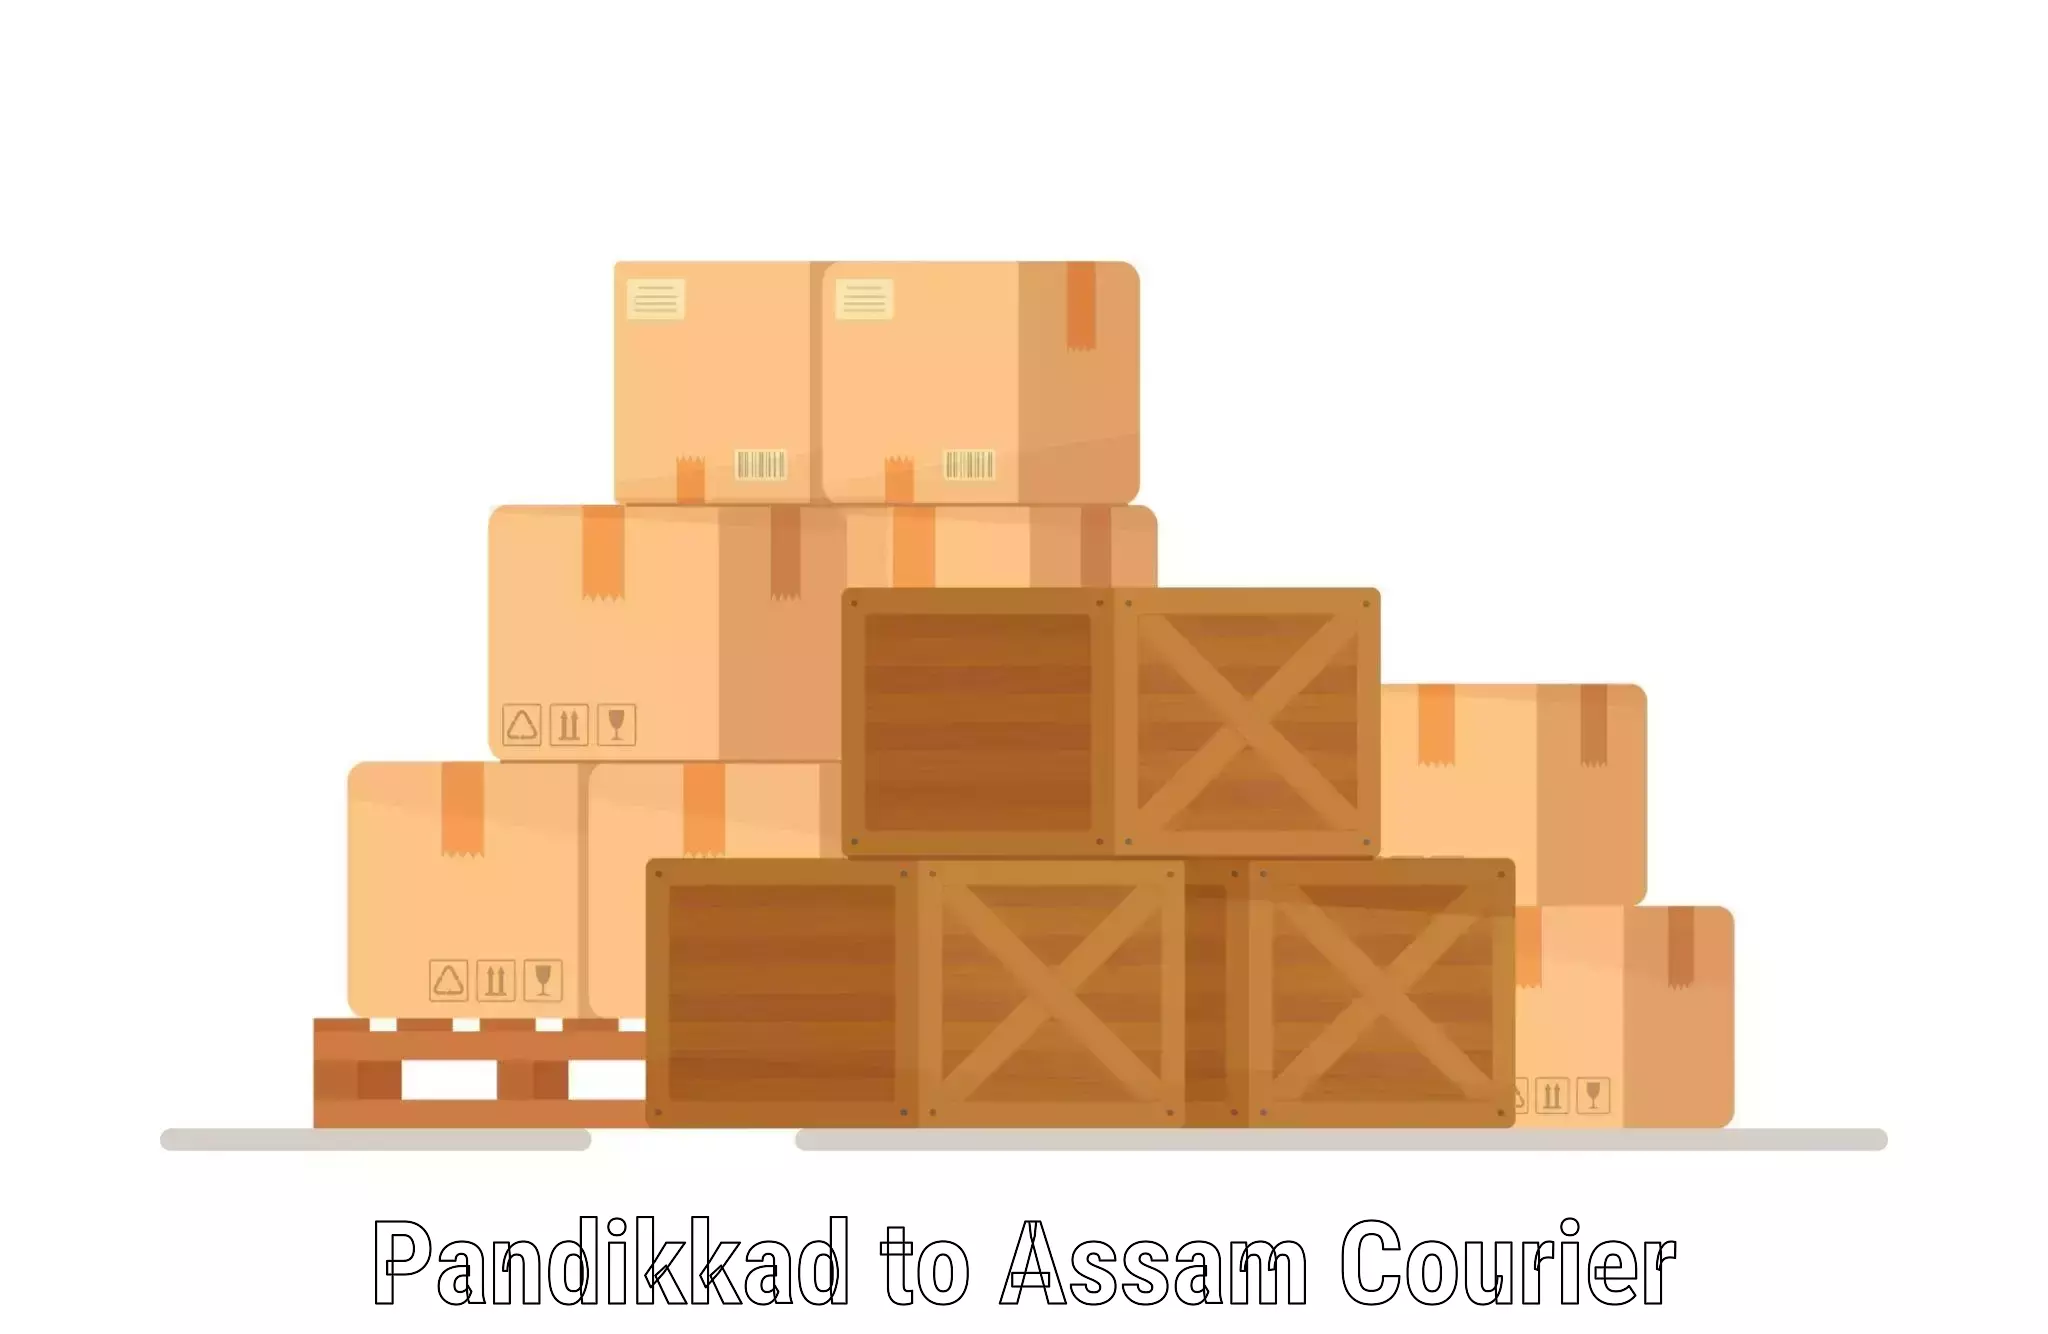 Logistics efficiency Pandikkad to Assam